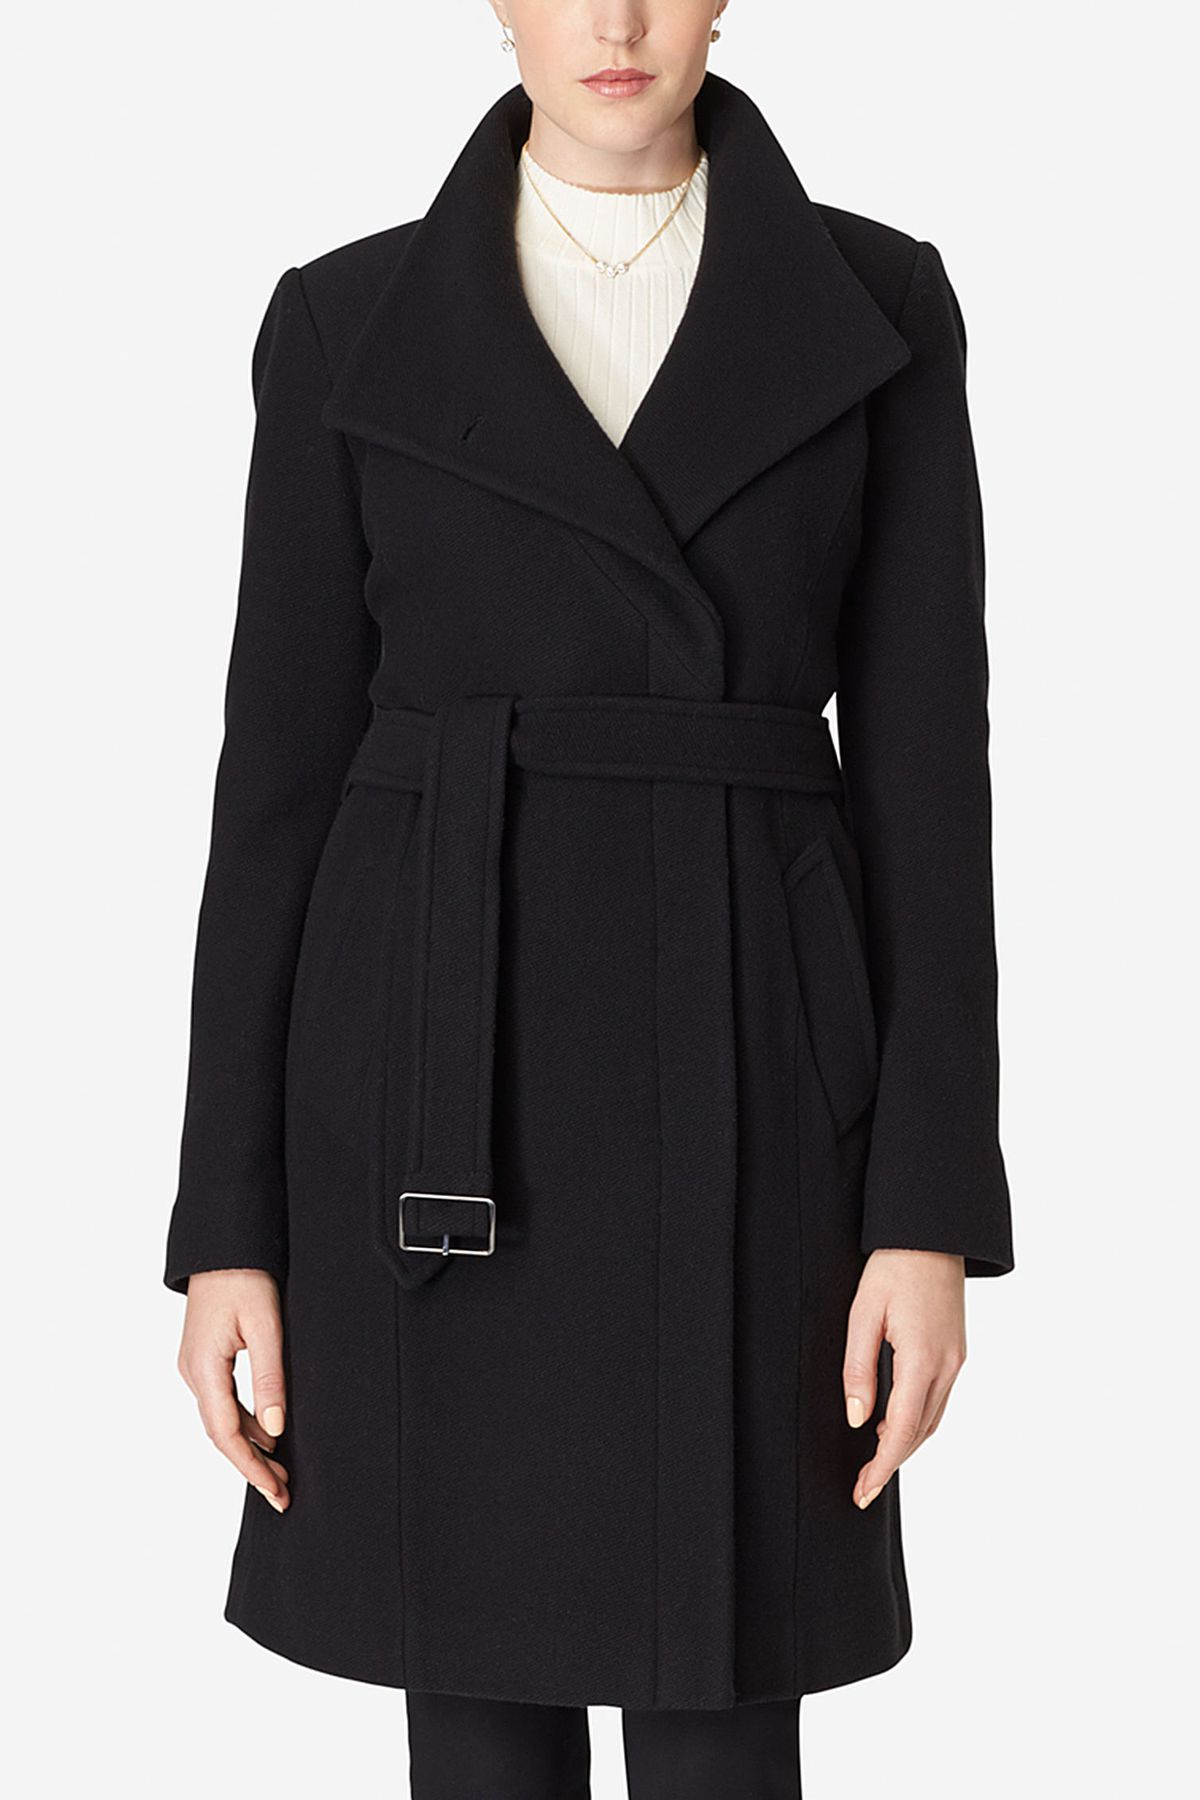 a black belted coat